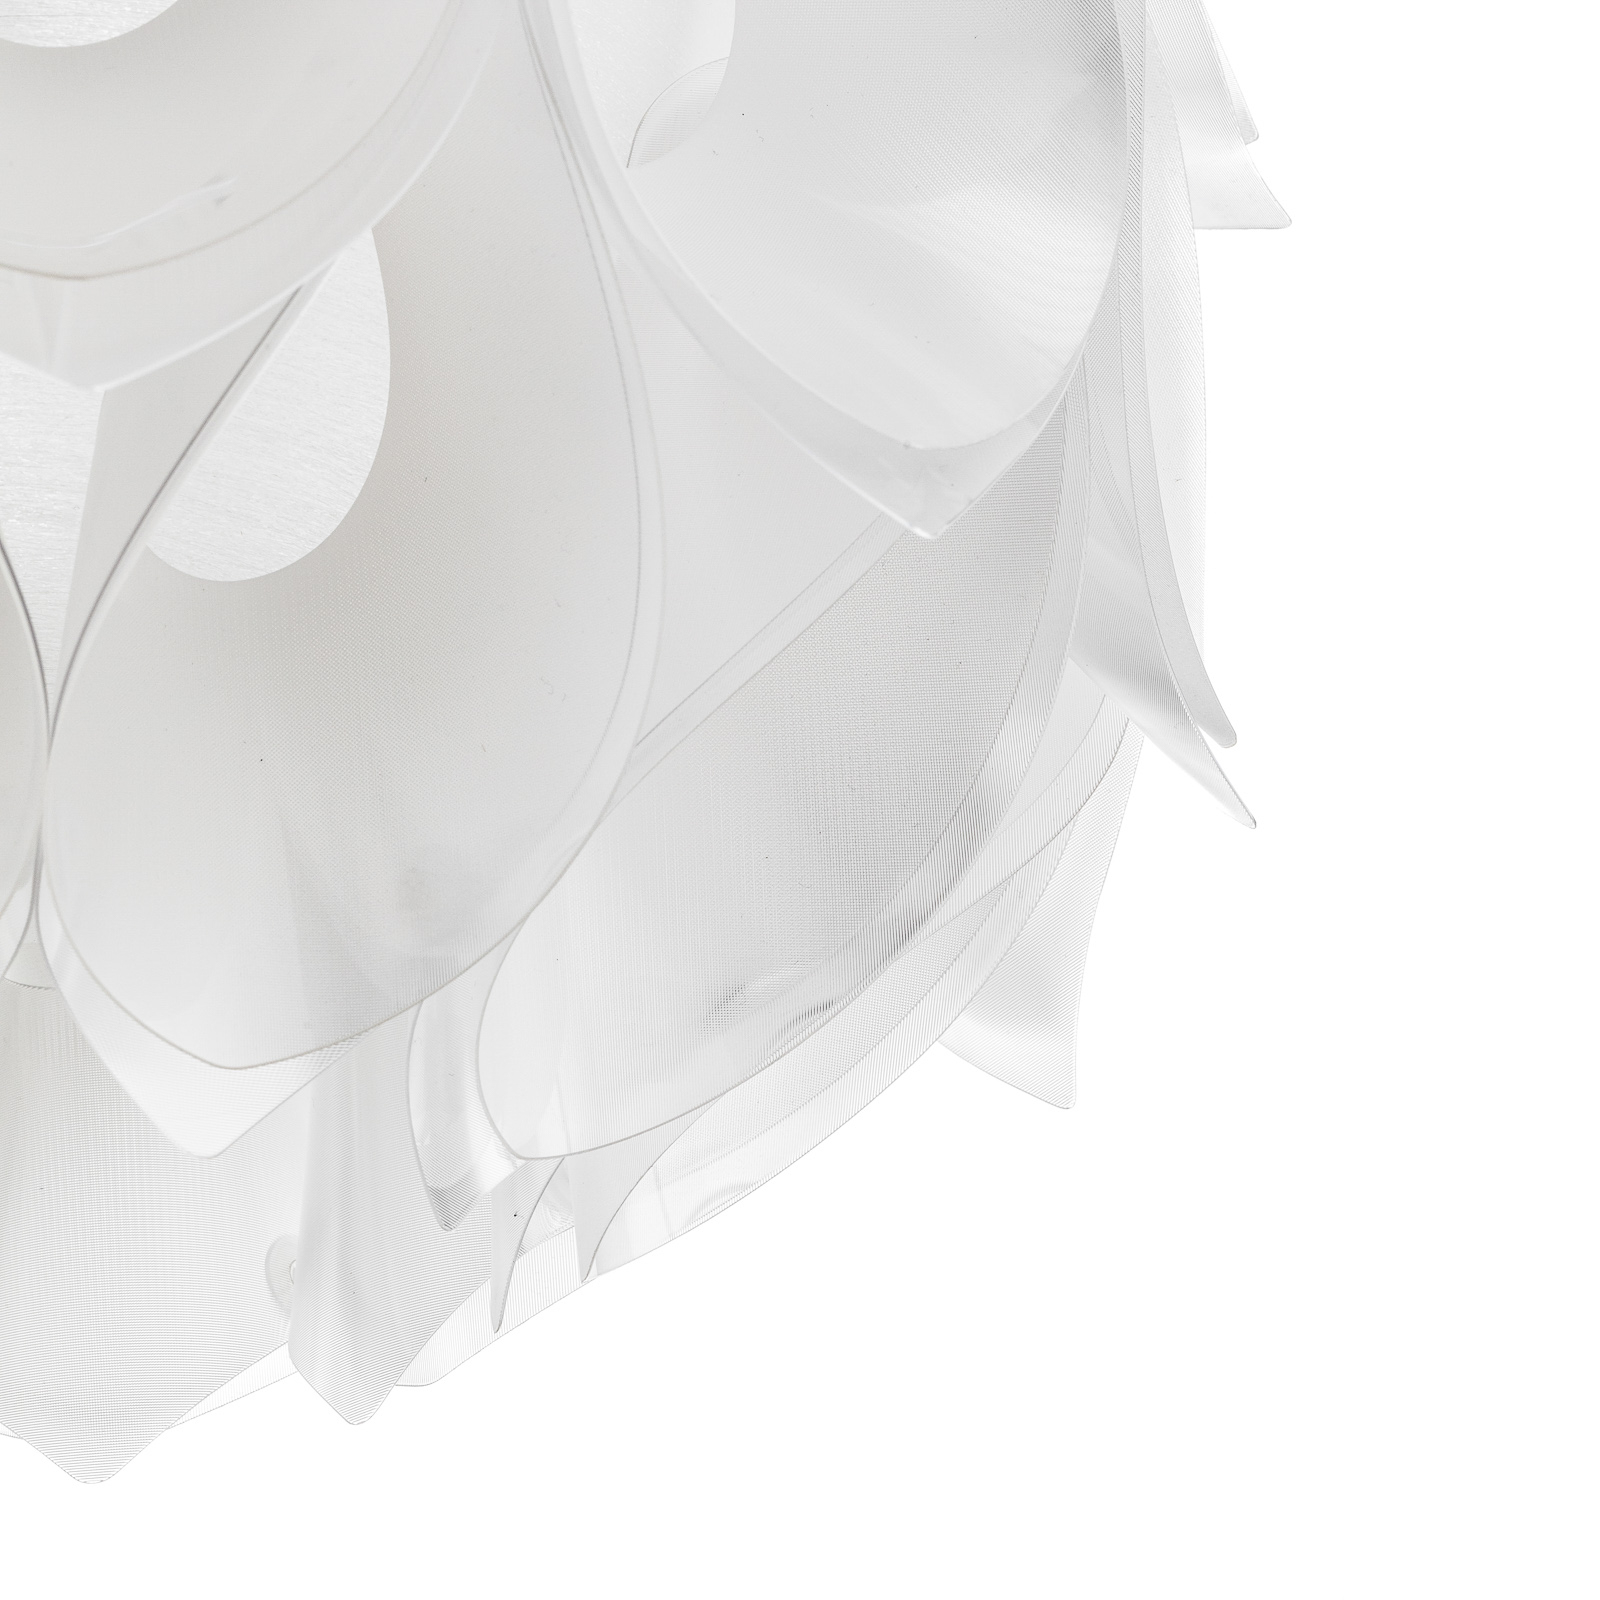 Slamp Flora S – dizajnérska závesná lampa, biela